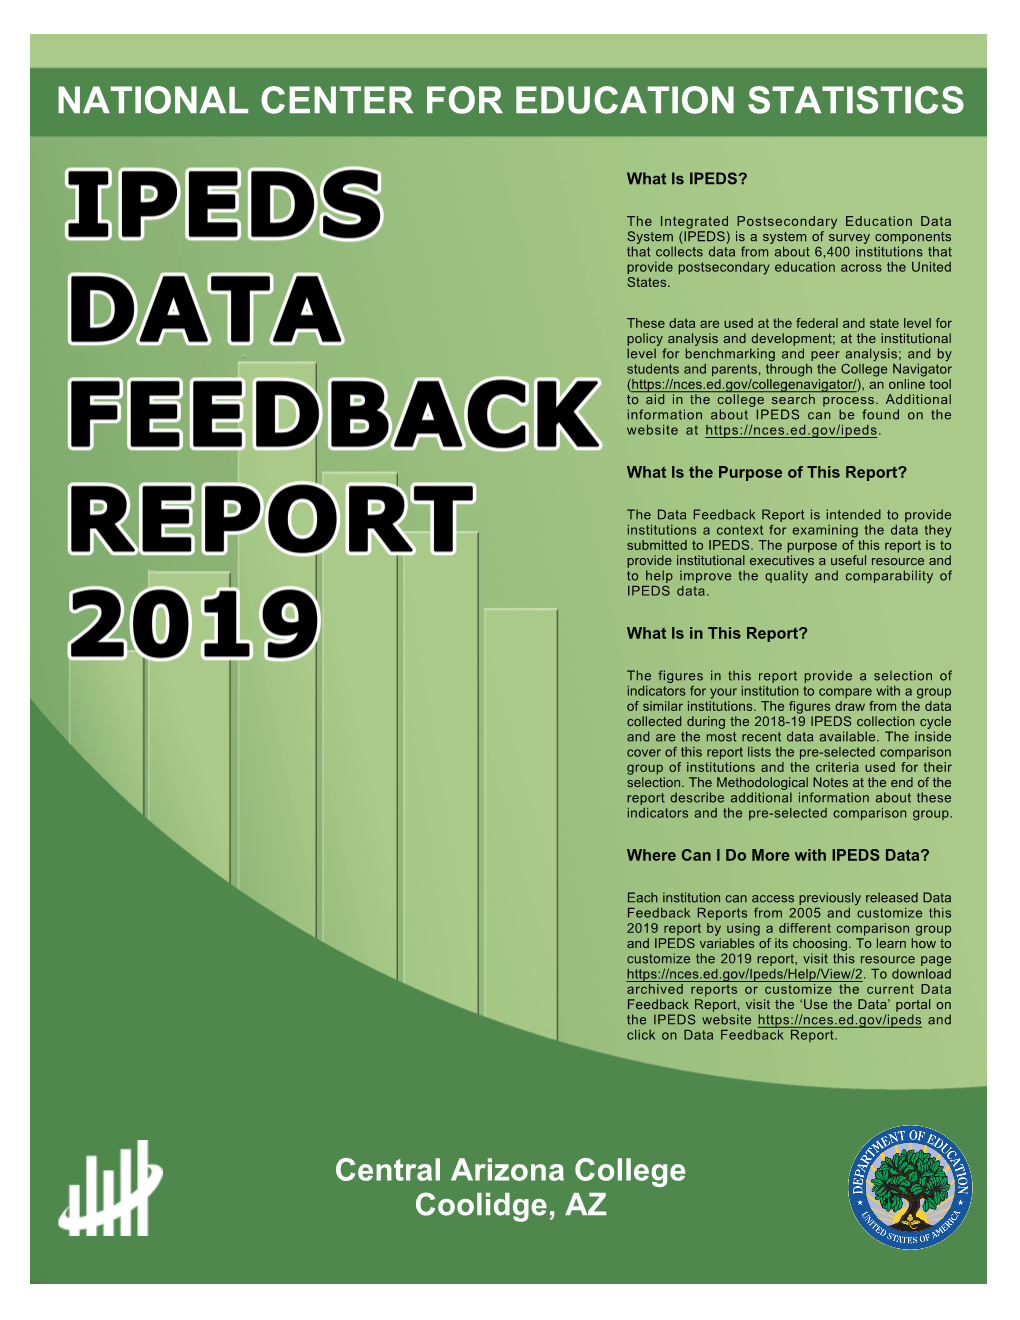 DFR 2019 Report